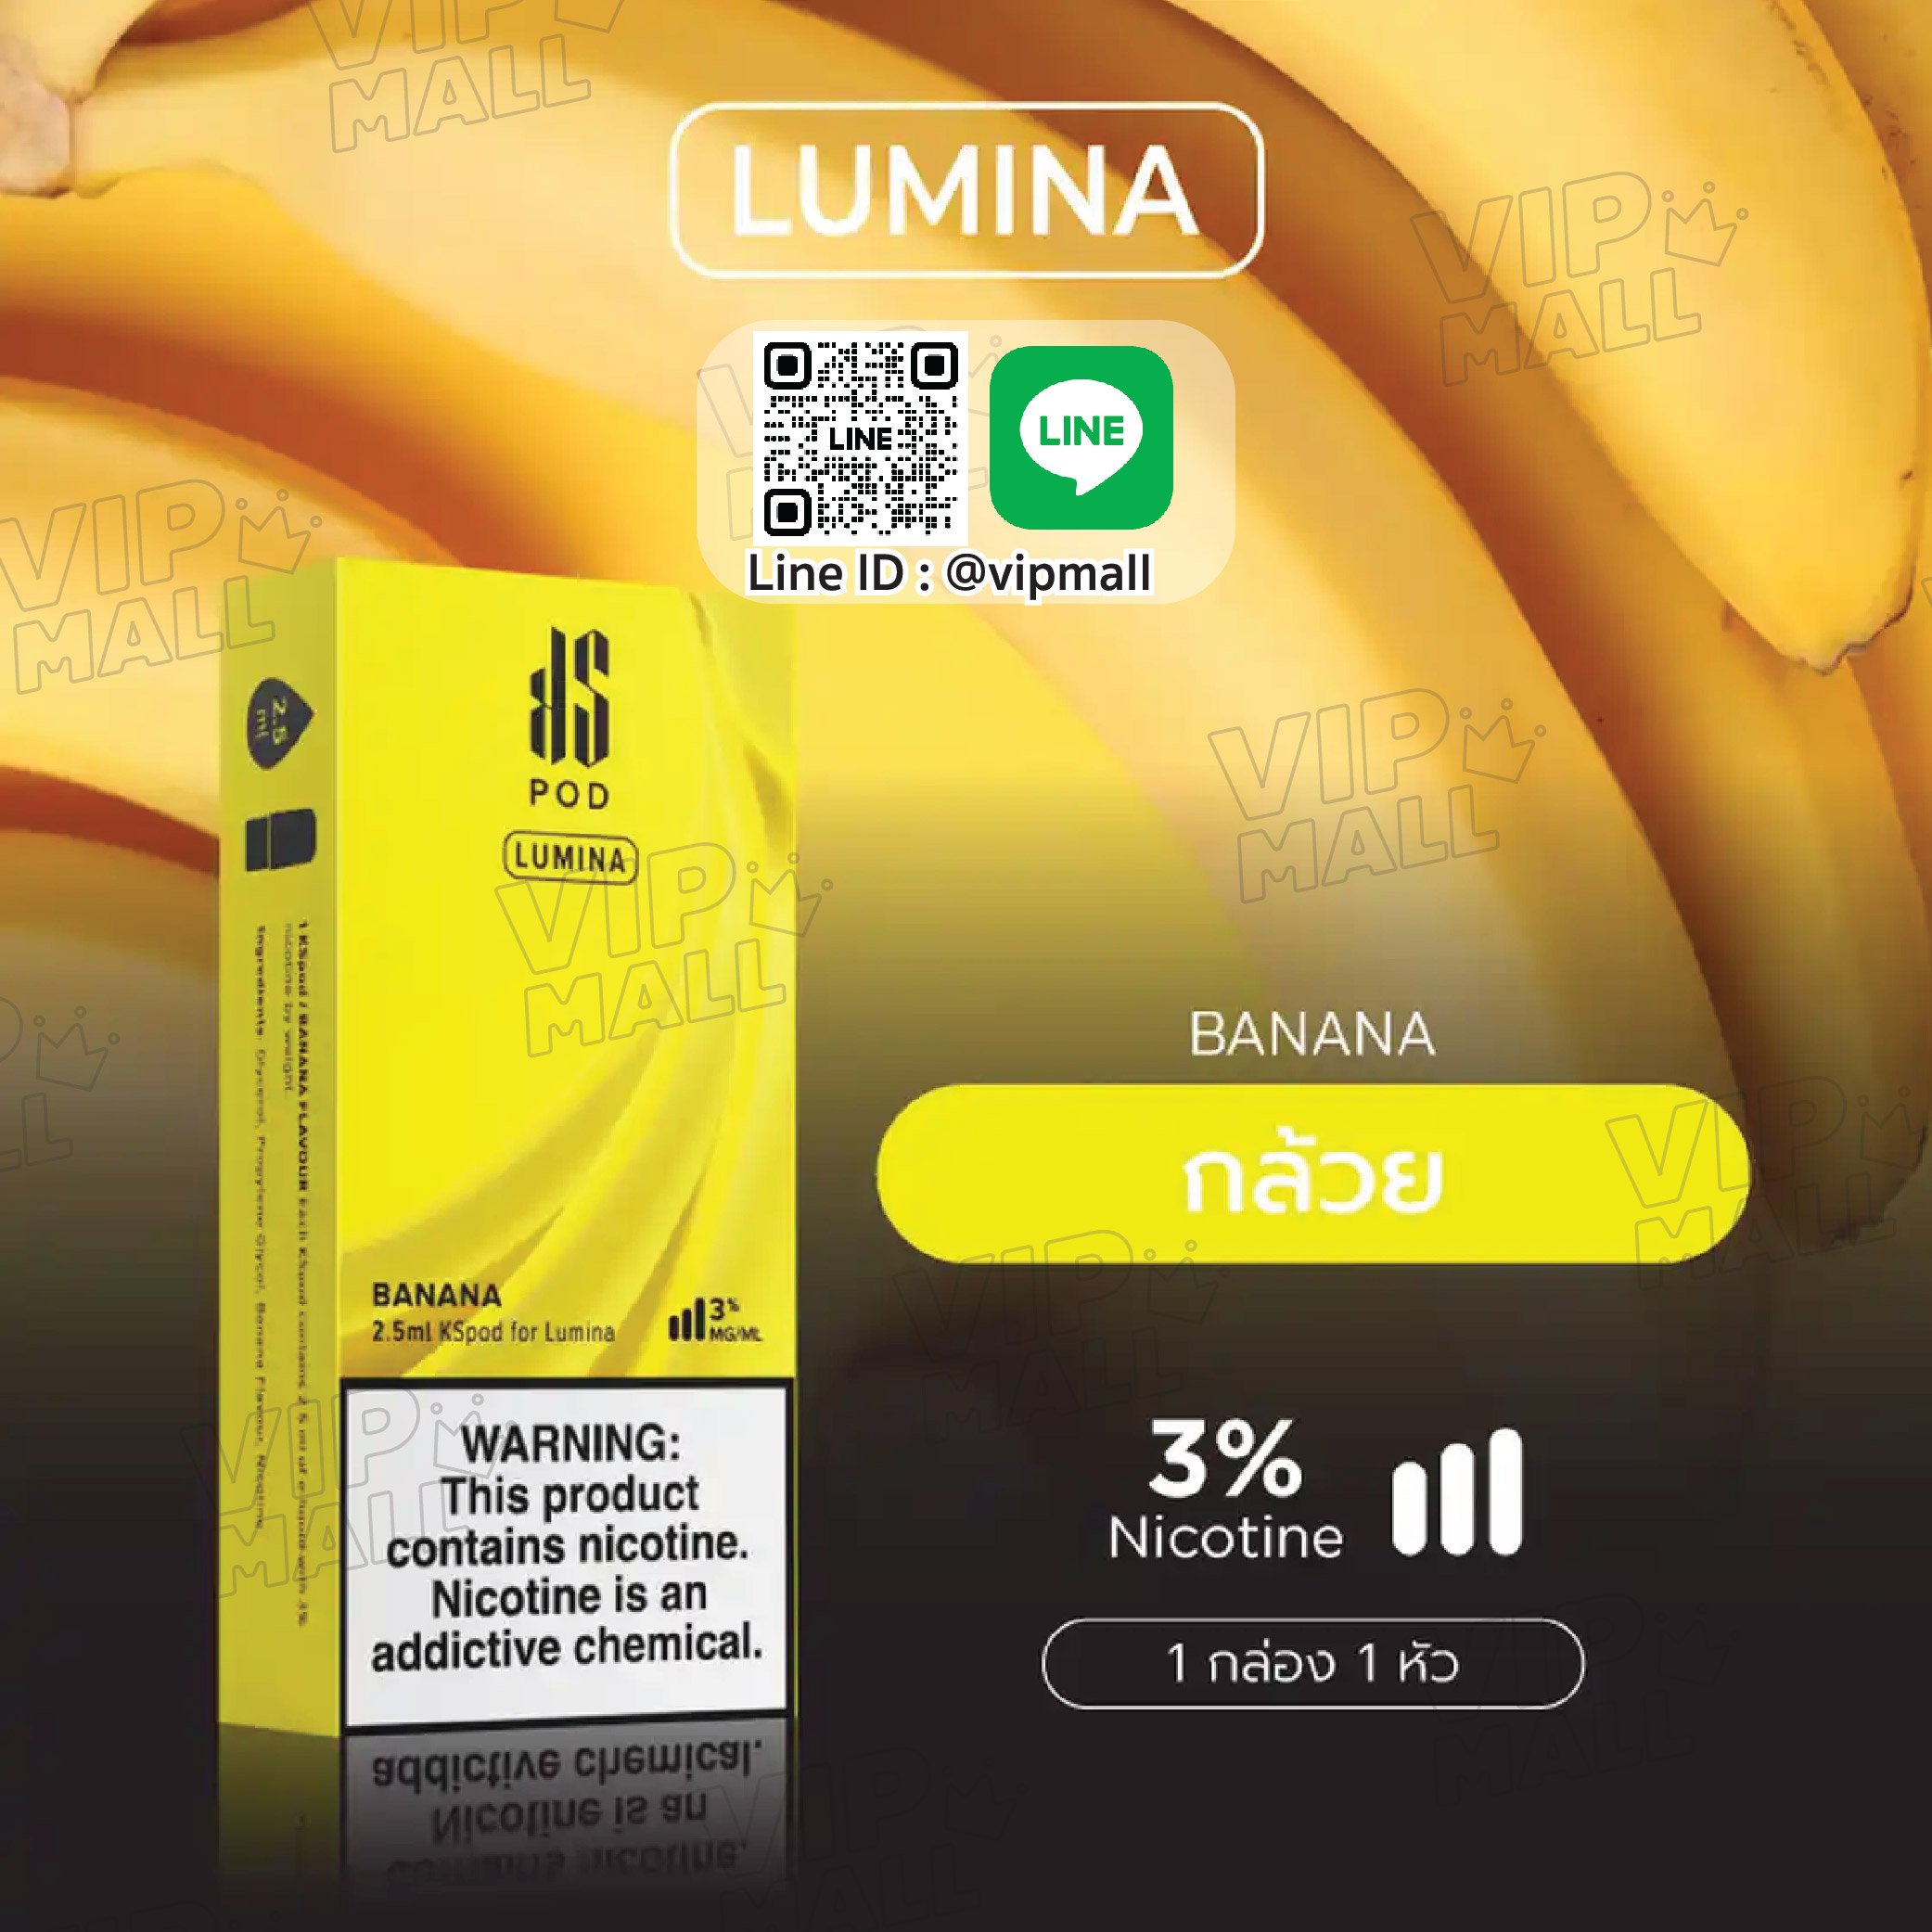 KS Lumina Pod กลิ่น กล้วย หัวบุหรี่ไฟฟ้า lumina ออกใหม่ มีเหรอจะขาดกลิ่นประจำอย่างกลิ่นกล้วย นับถอยหลัง พอต lumina ก้าวสู่อันดับในท้องตลาด ไปพร้อมๆกันนะคะ